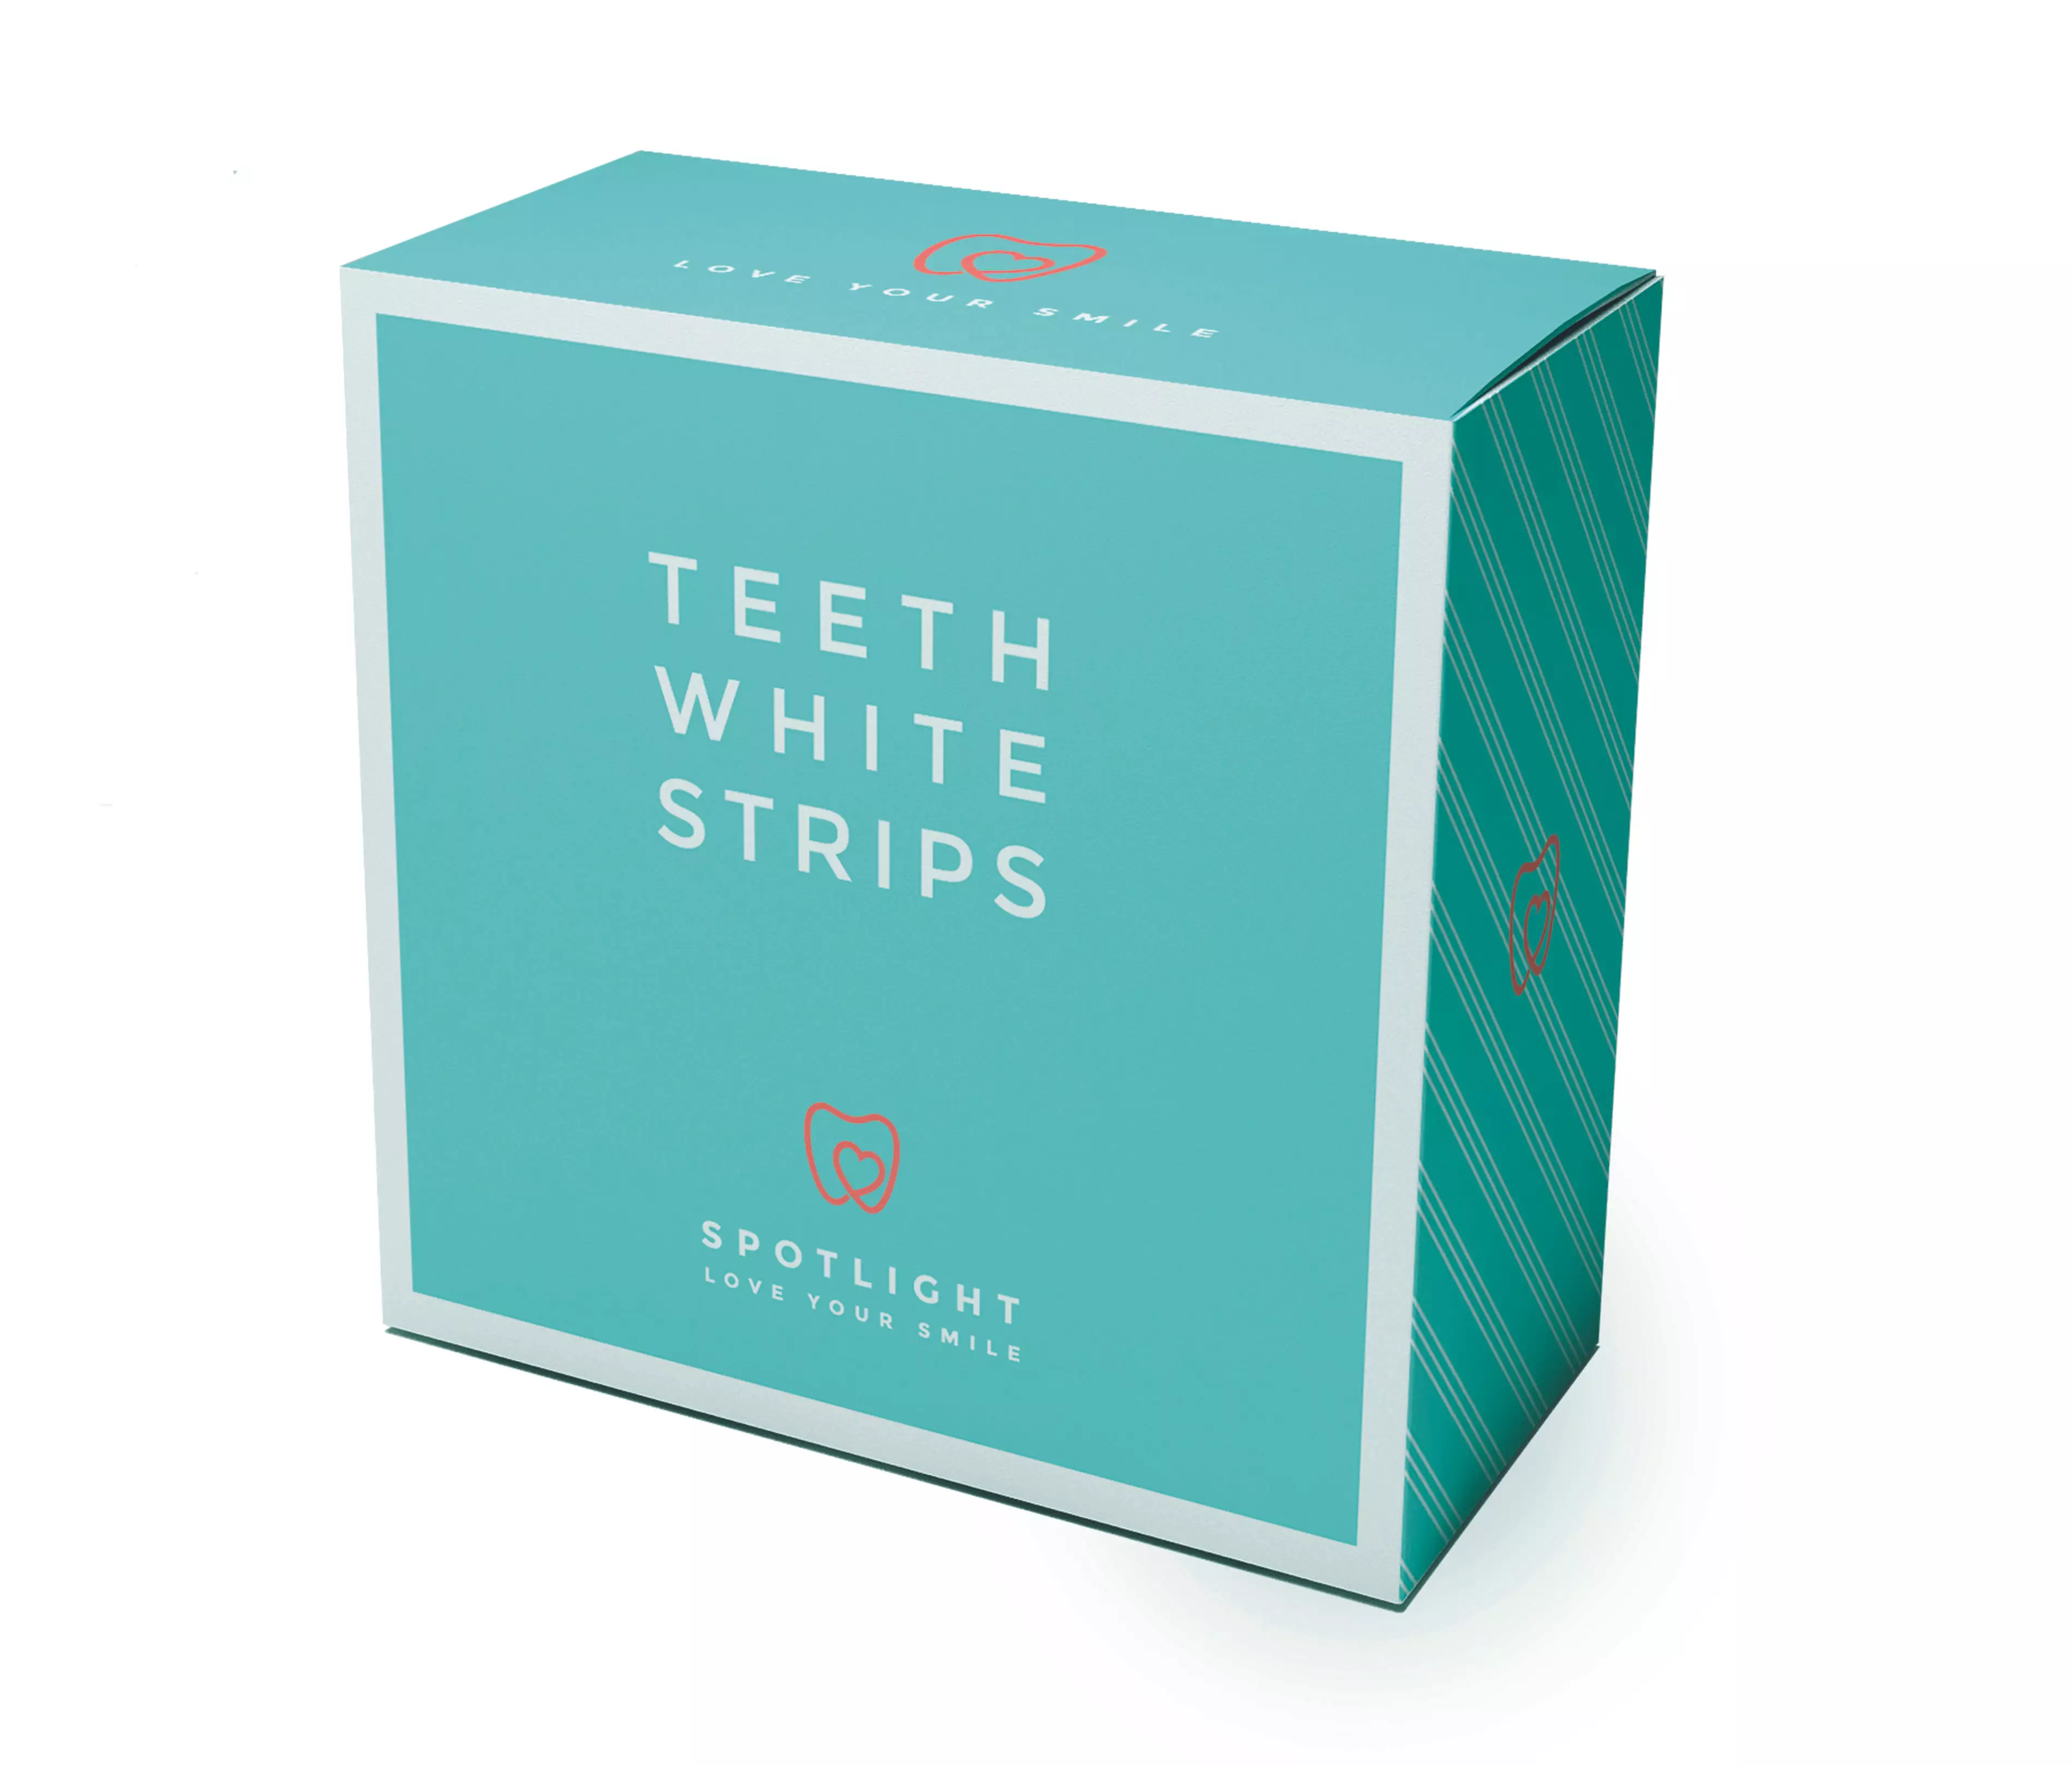 Spotlight Teeth Whitening Strips retail for £39.95.